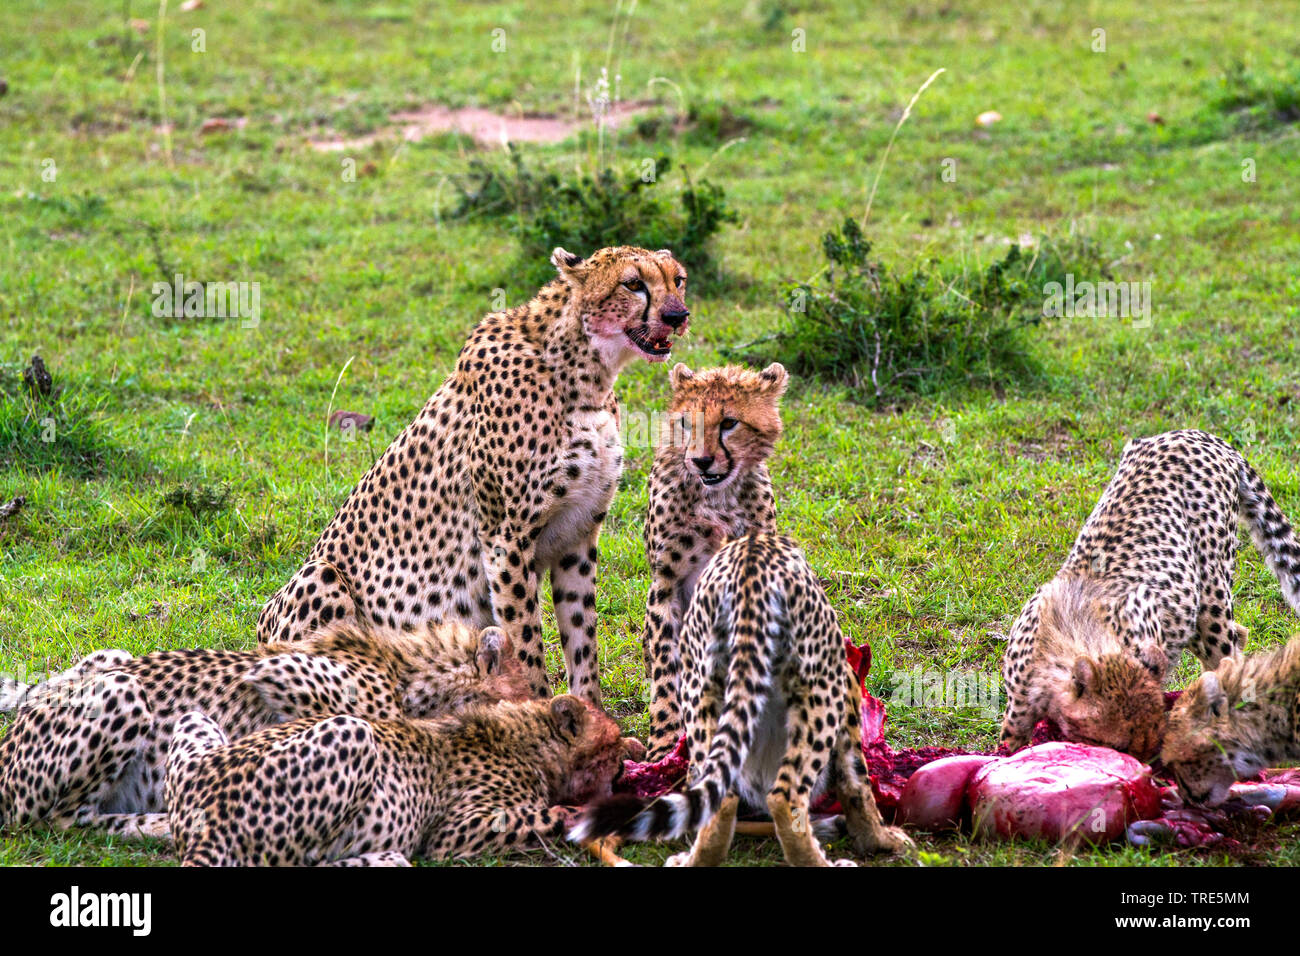 cheetah (Acinonyx jubatus), cheetah family eating at a cadaver, Kenya, Masai Mara National Park Stock Photo